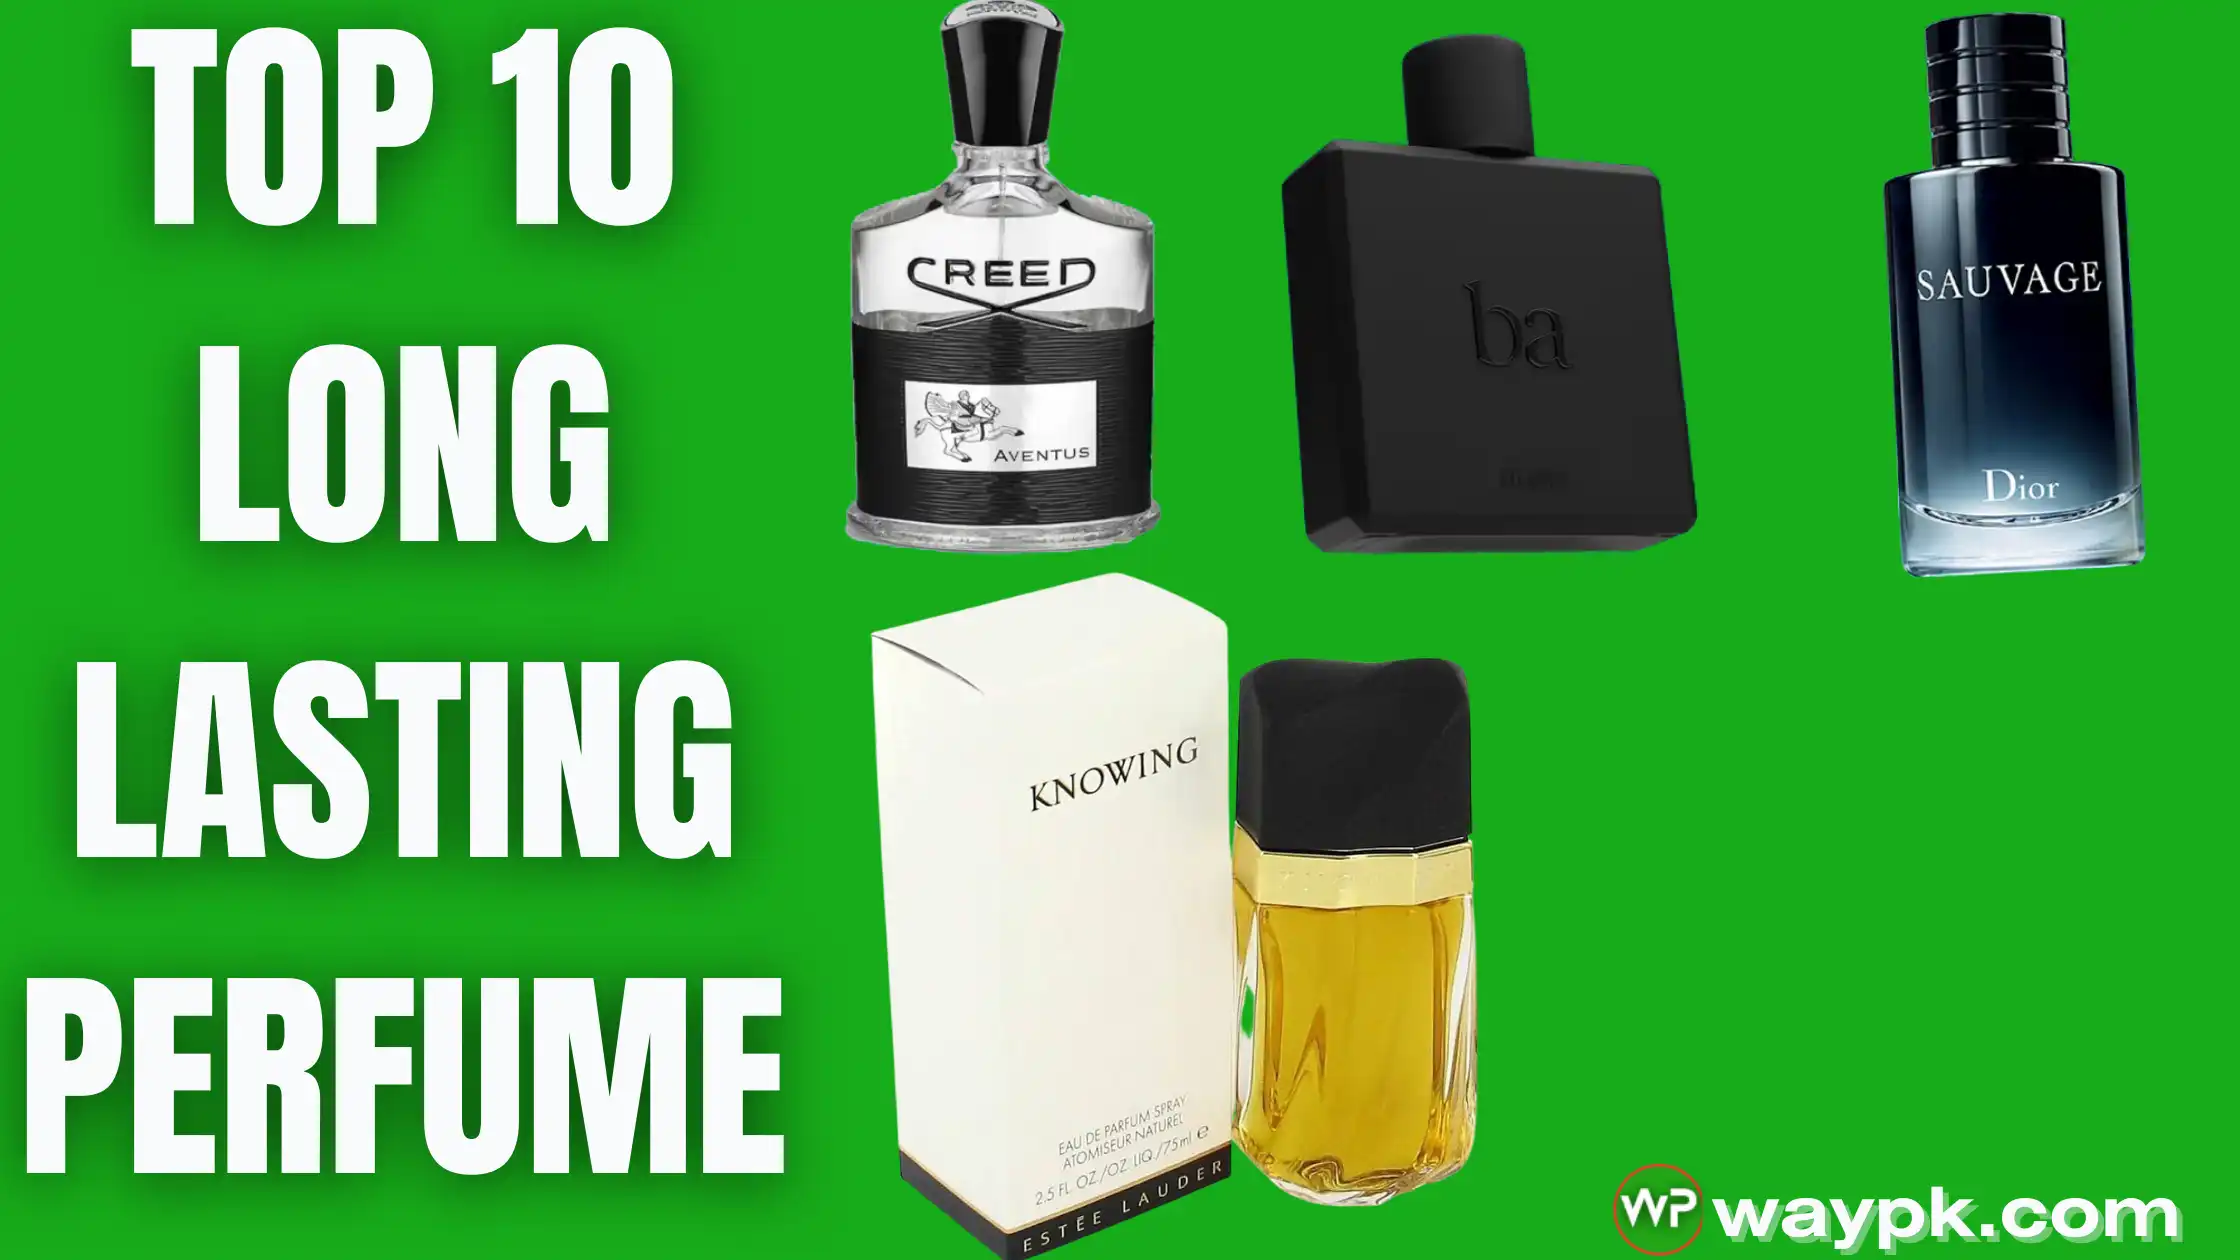 Top 10 Long Lasting Perfume